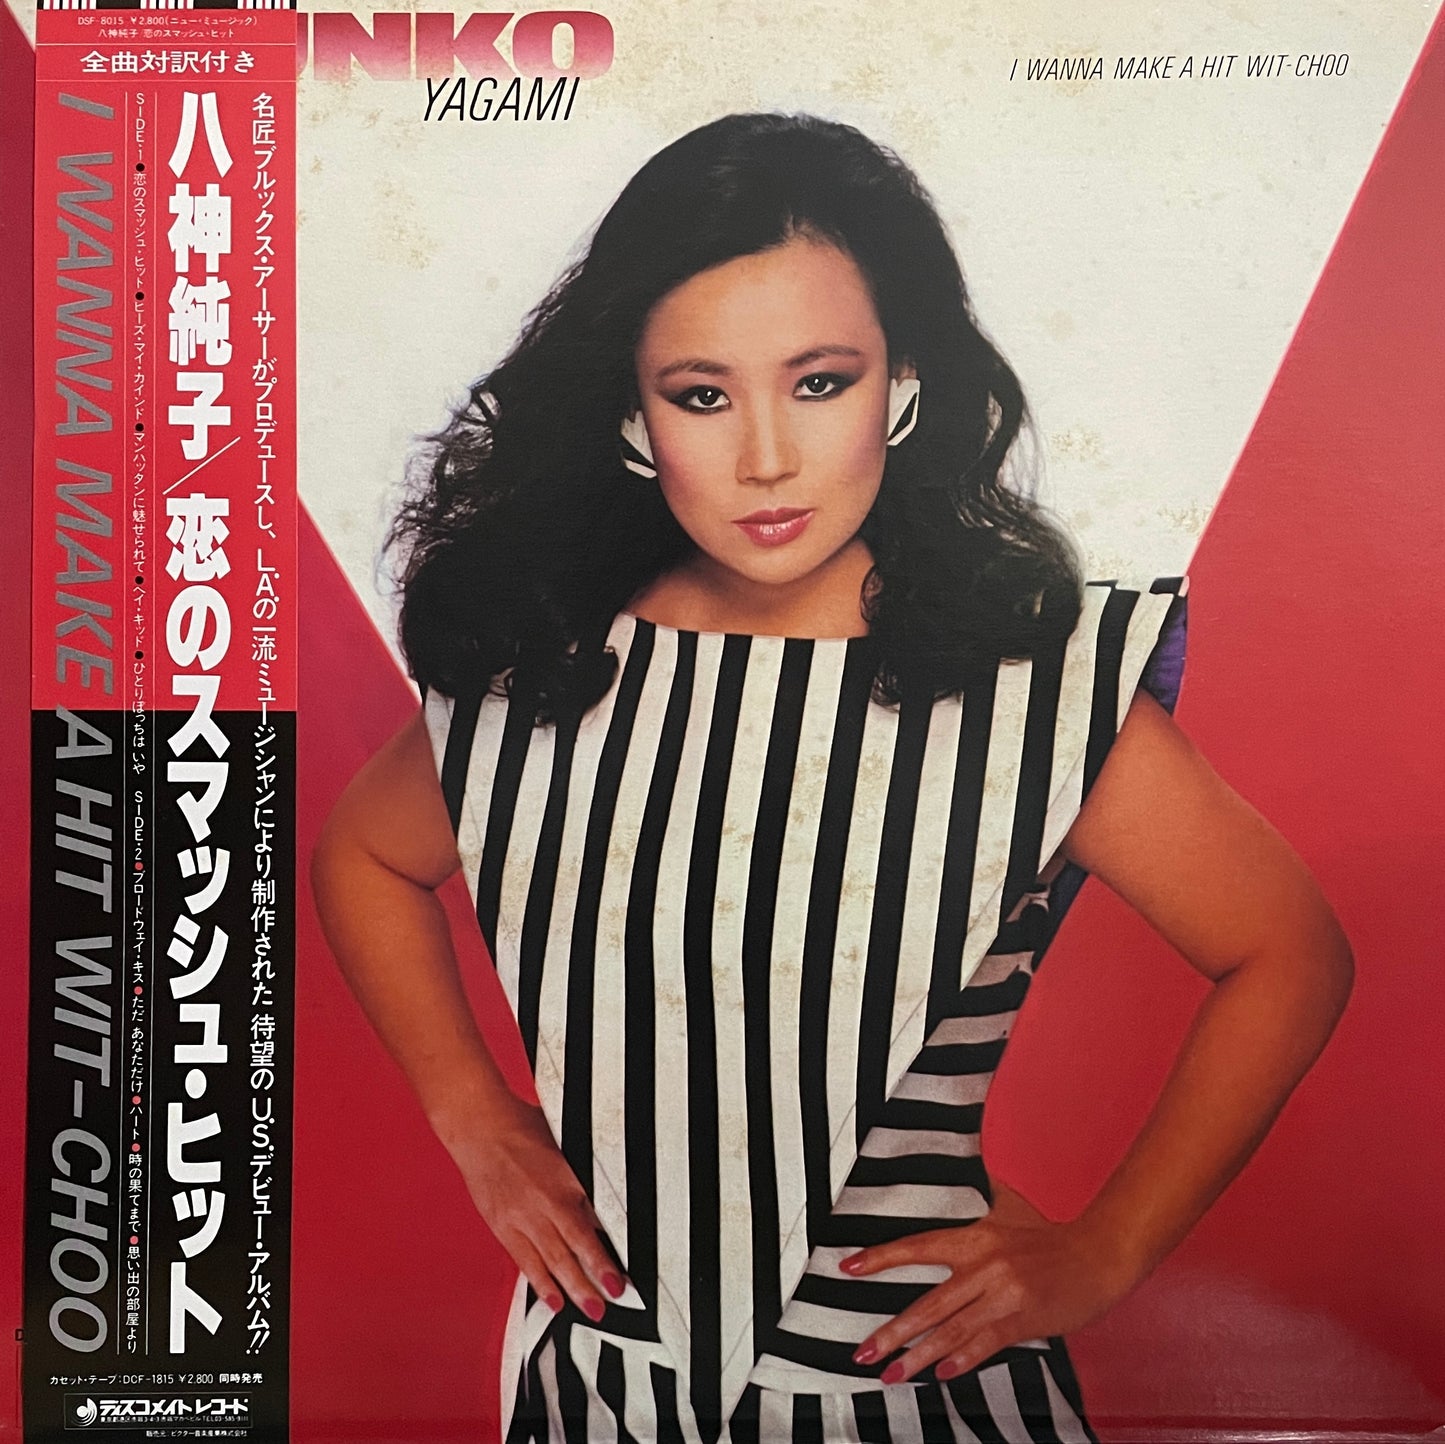 Junko Yagami "I Wanna Make A Hit Wit-Choo" (1983)